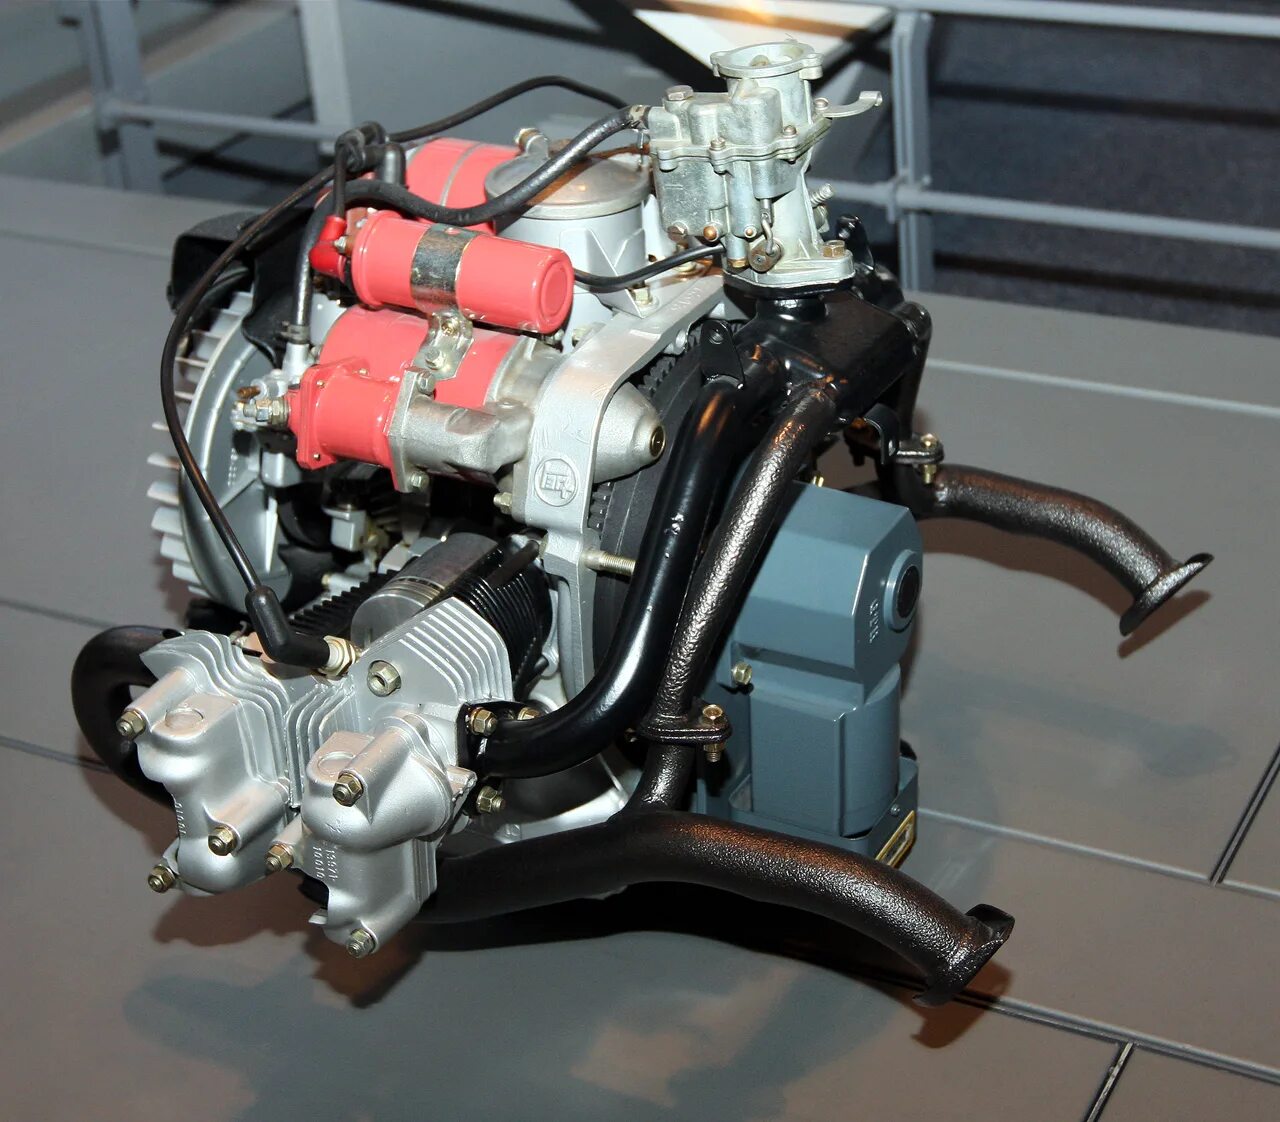 4y двигатель Toyota. Двигатель Type u62b1. Оппозитный мотор Тойота. Toyota publica двигатель.